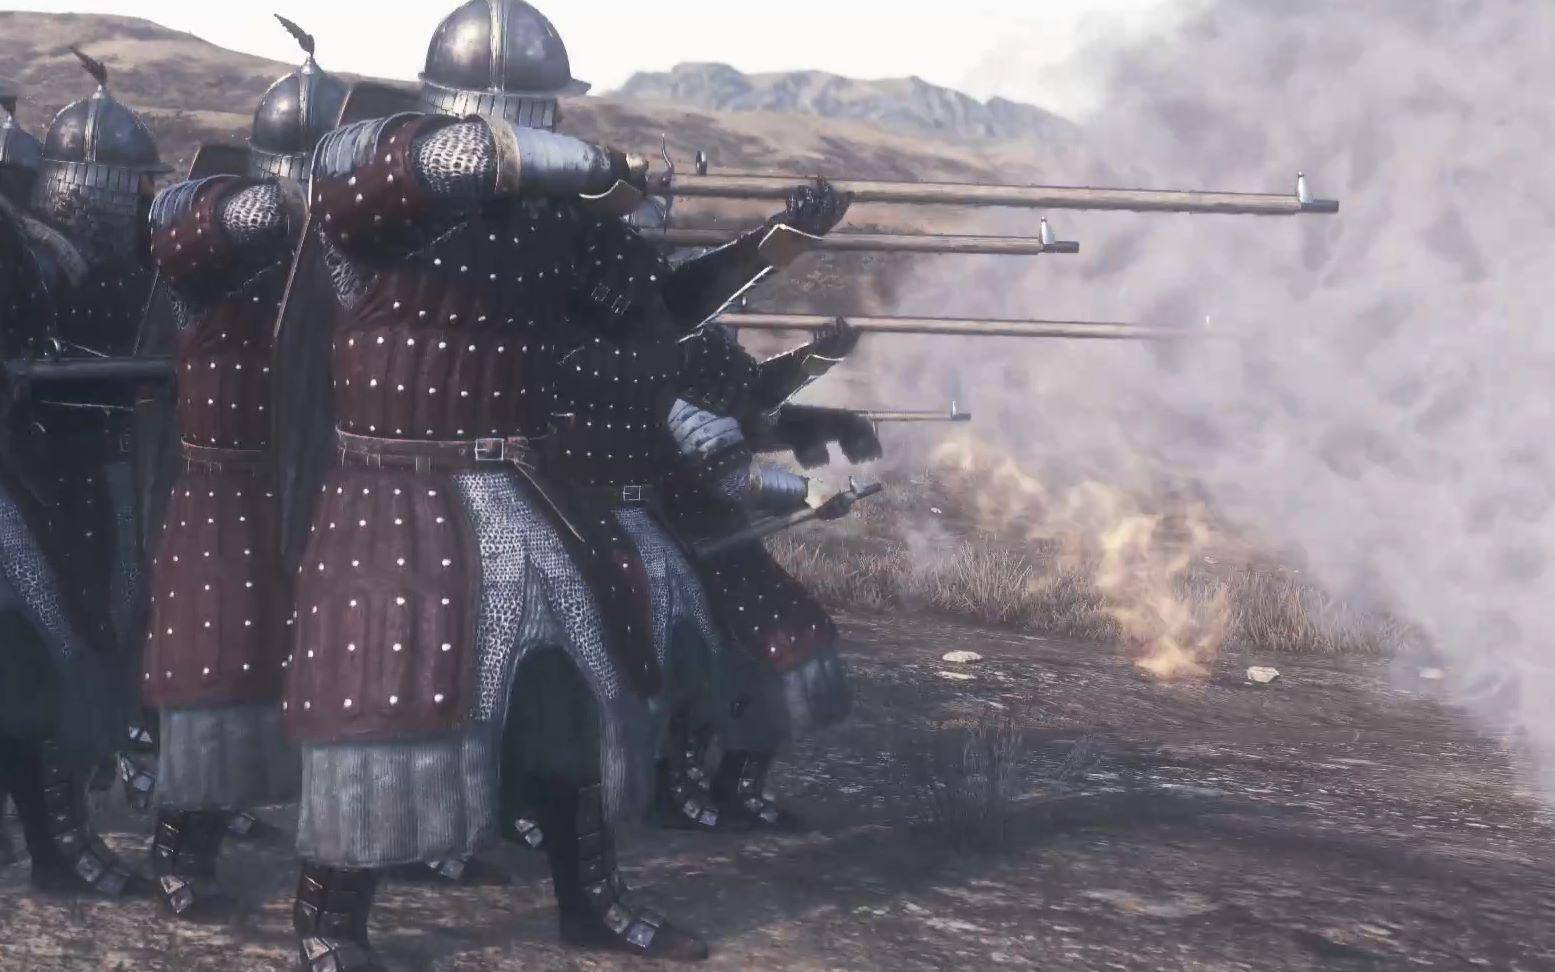 清朝軍隊除弓馬騎射外，還有火器。